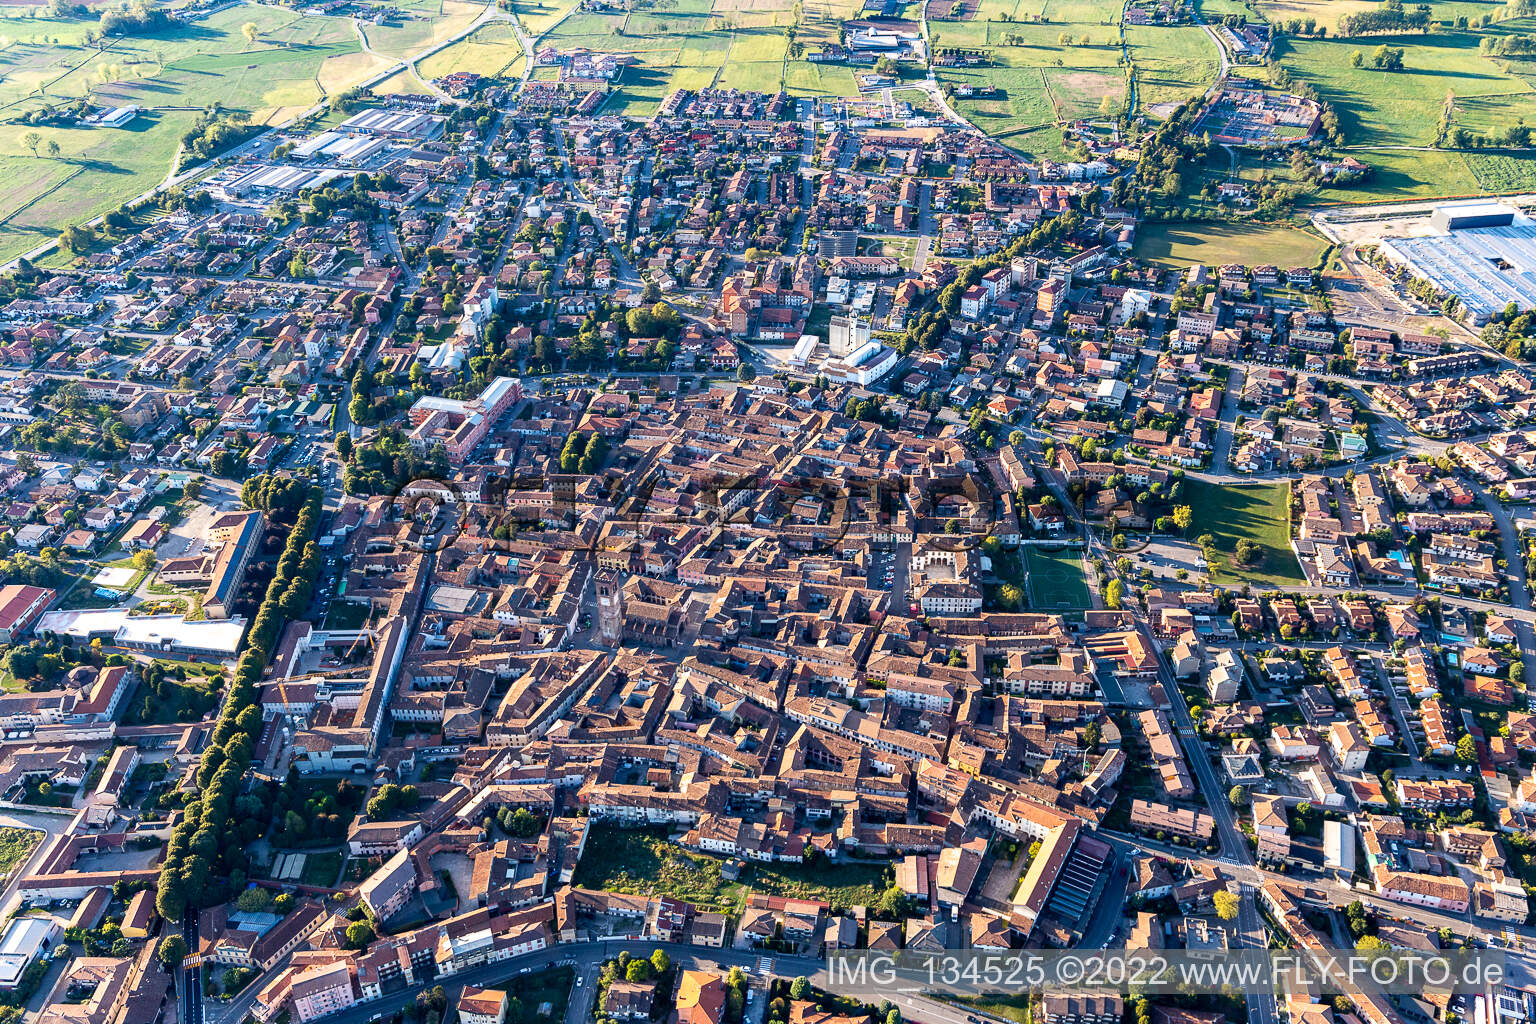 Rivolta d’Adda in the state Cremona, Italy